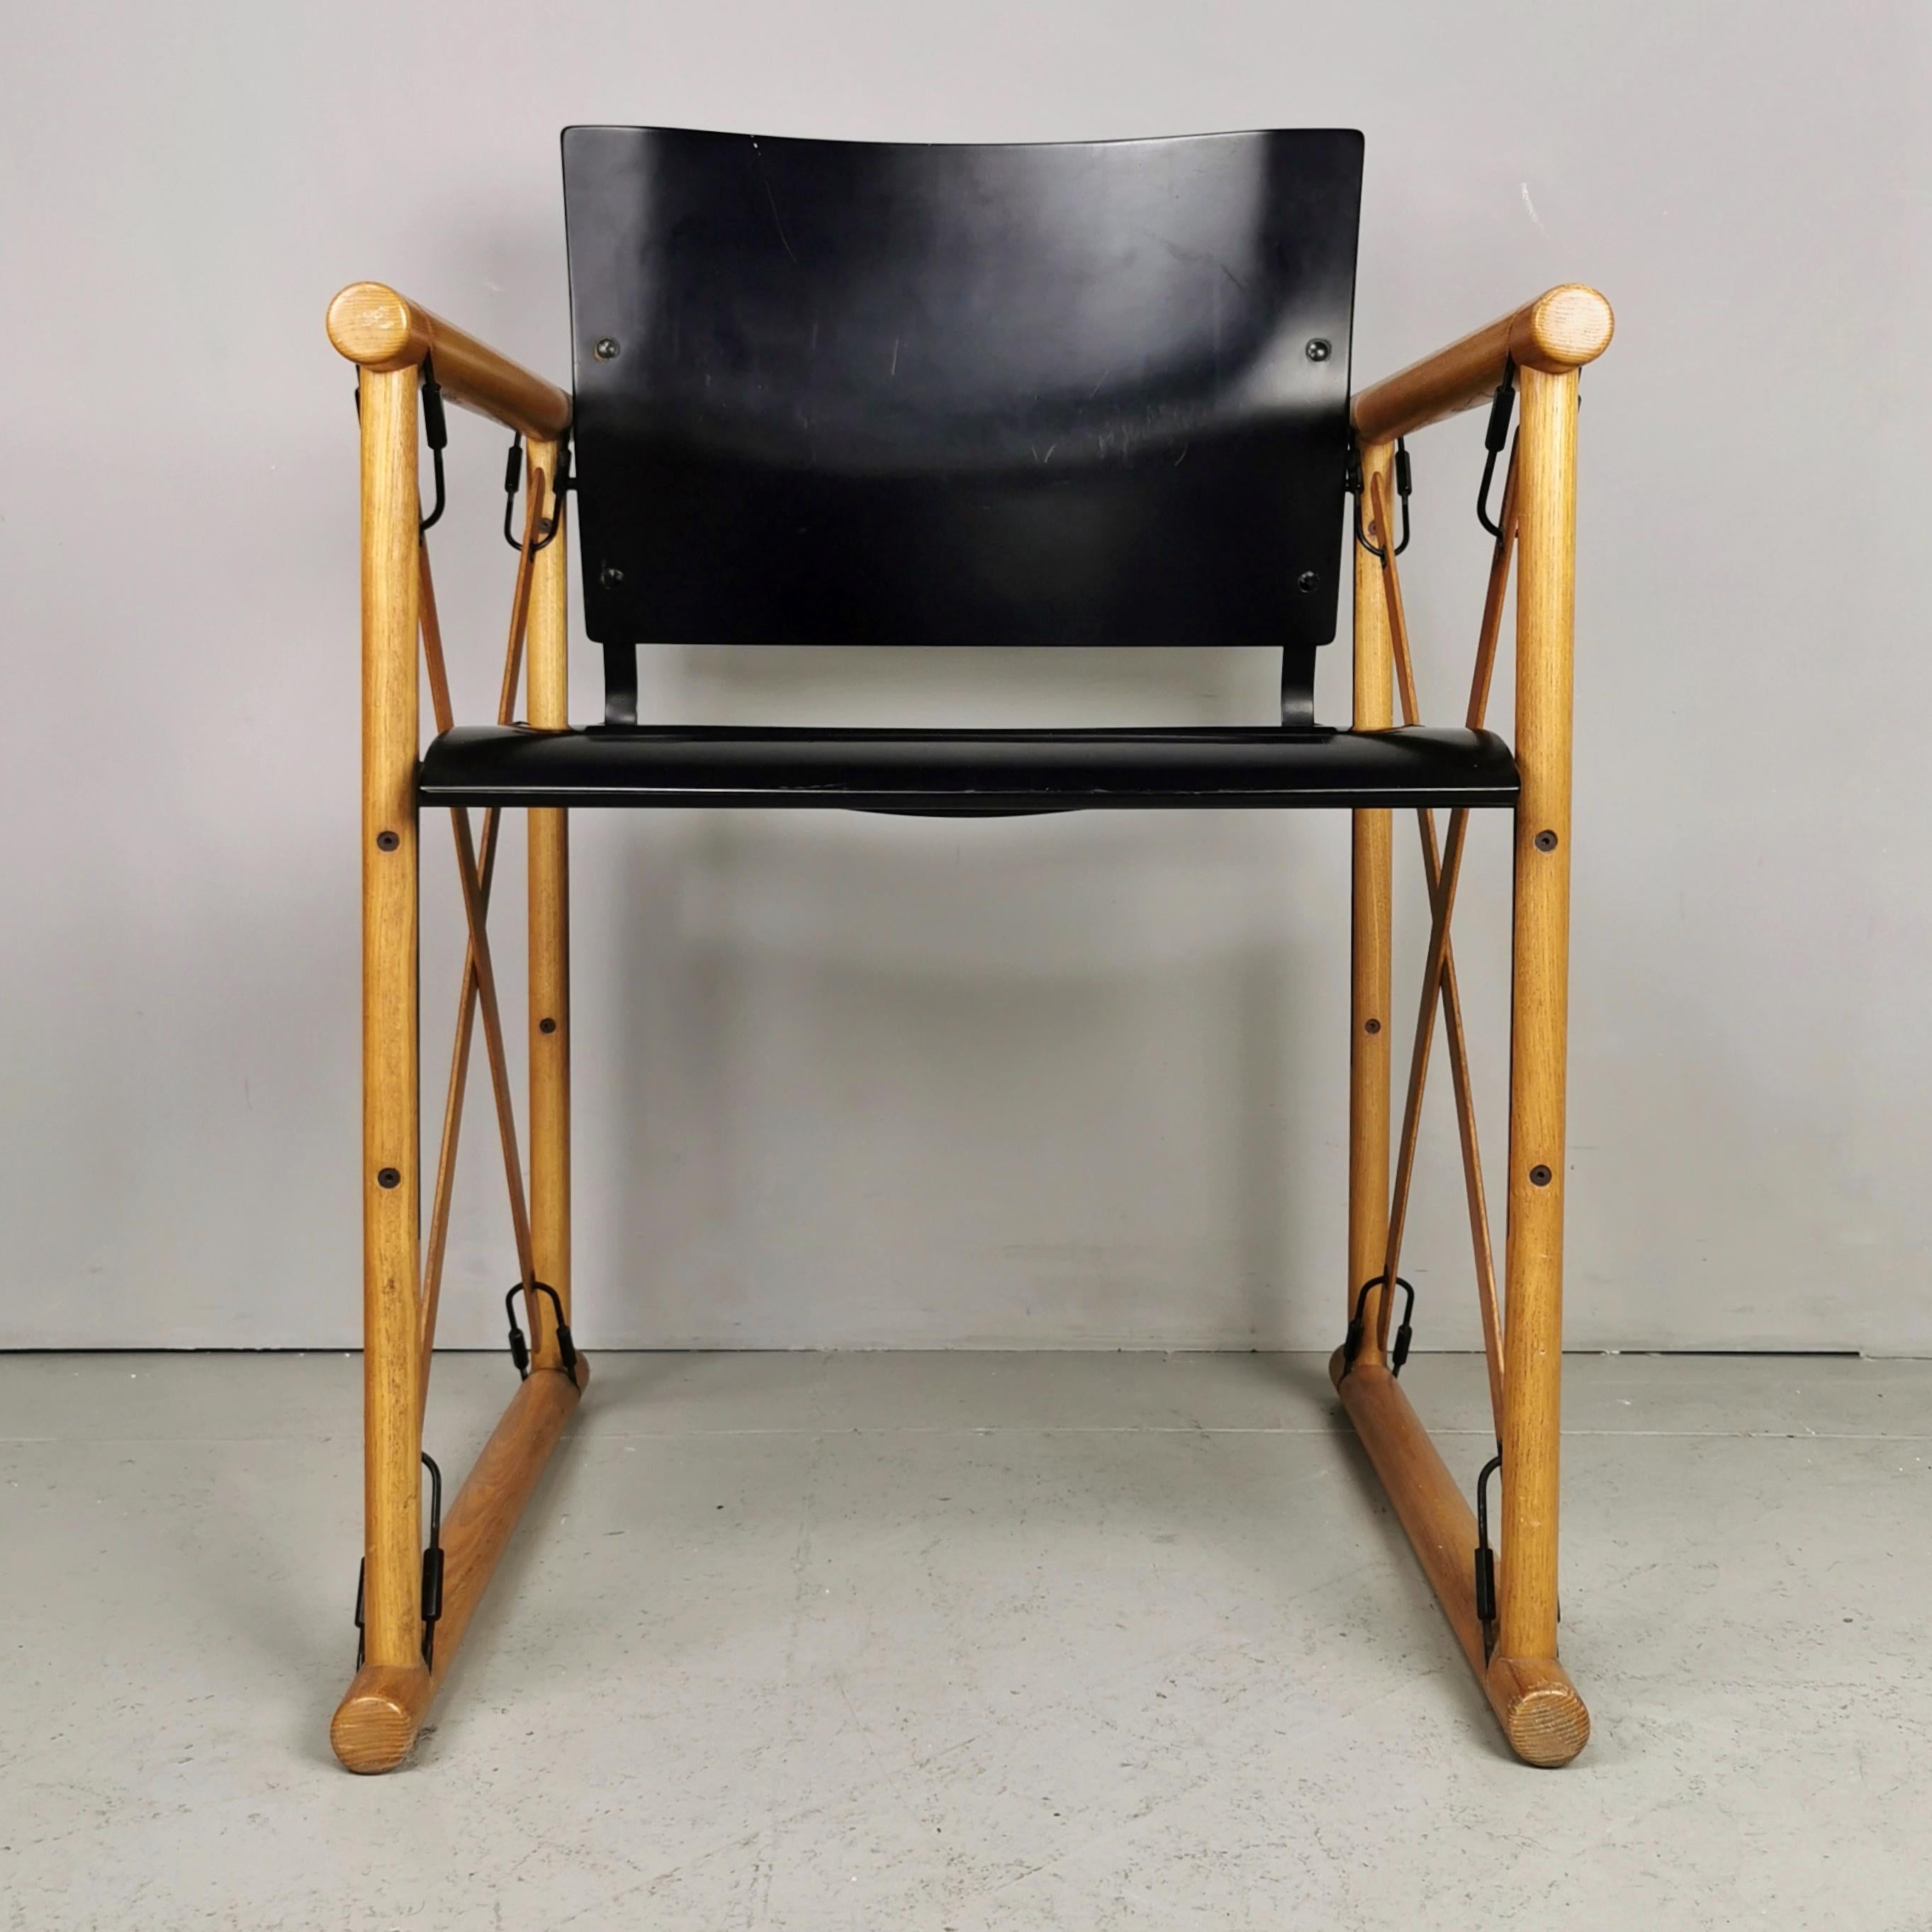 Raro set di Sedie anni 70 con struttura in legno chiaro con seduta e schienale in legno curvato laccato nero. La particolare struttura con inserti in metallo nero le rendono adatte a qualsiasi ambiente. Le sedie si presentano in ottime condizioni.